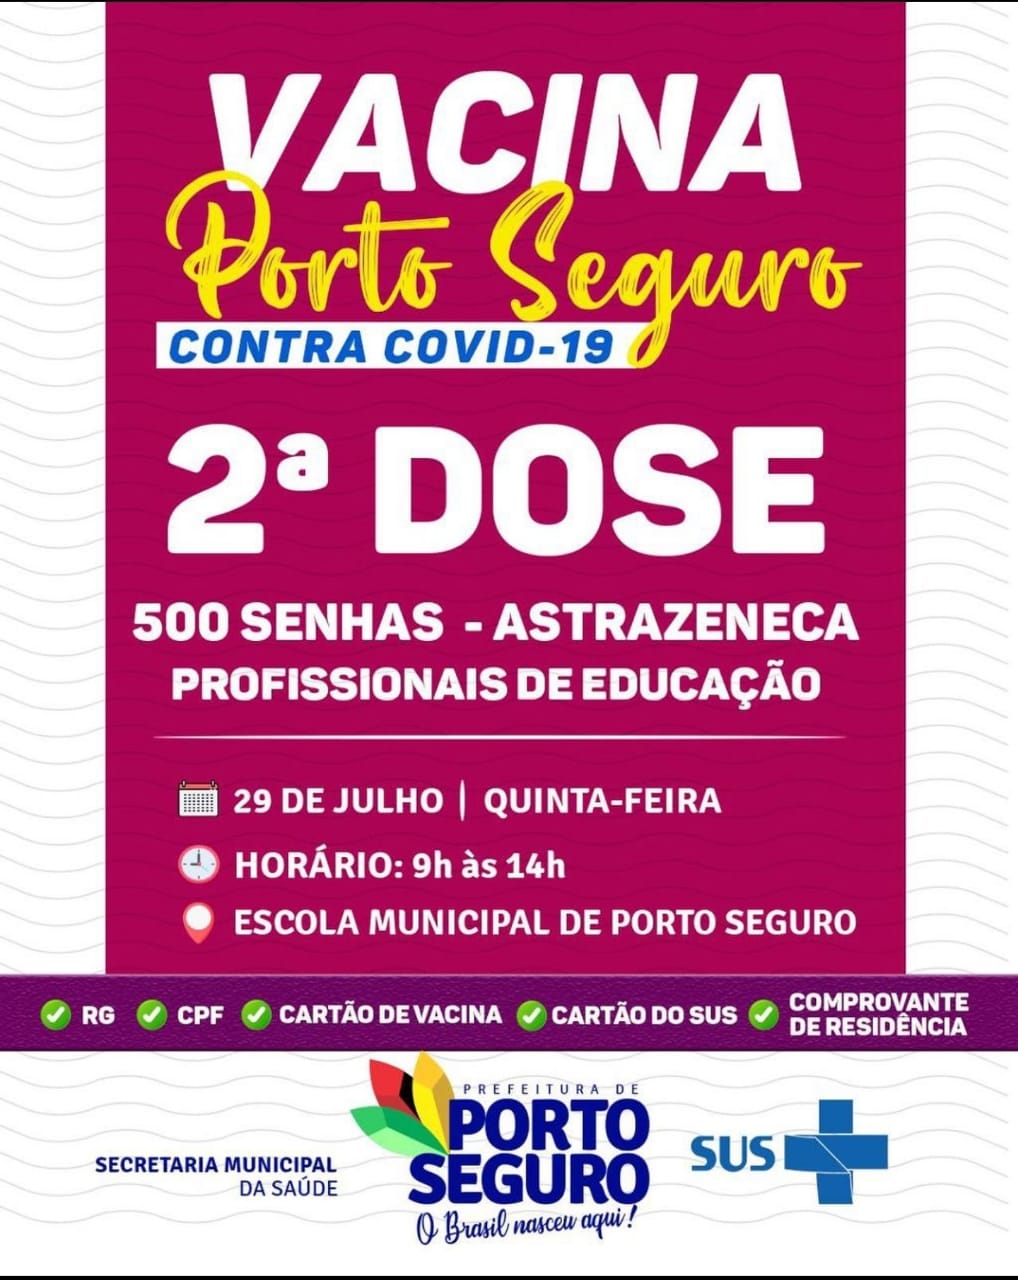 Vacina Porto Seguro contra Covid-19; cronograma de vacinação de 28 a 29 de julho 7